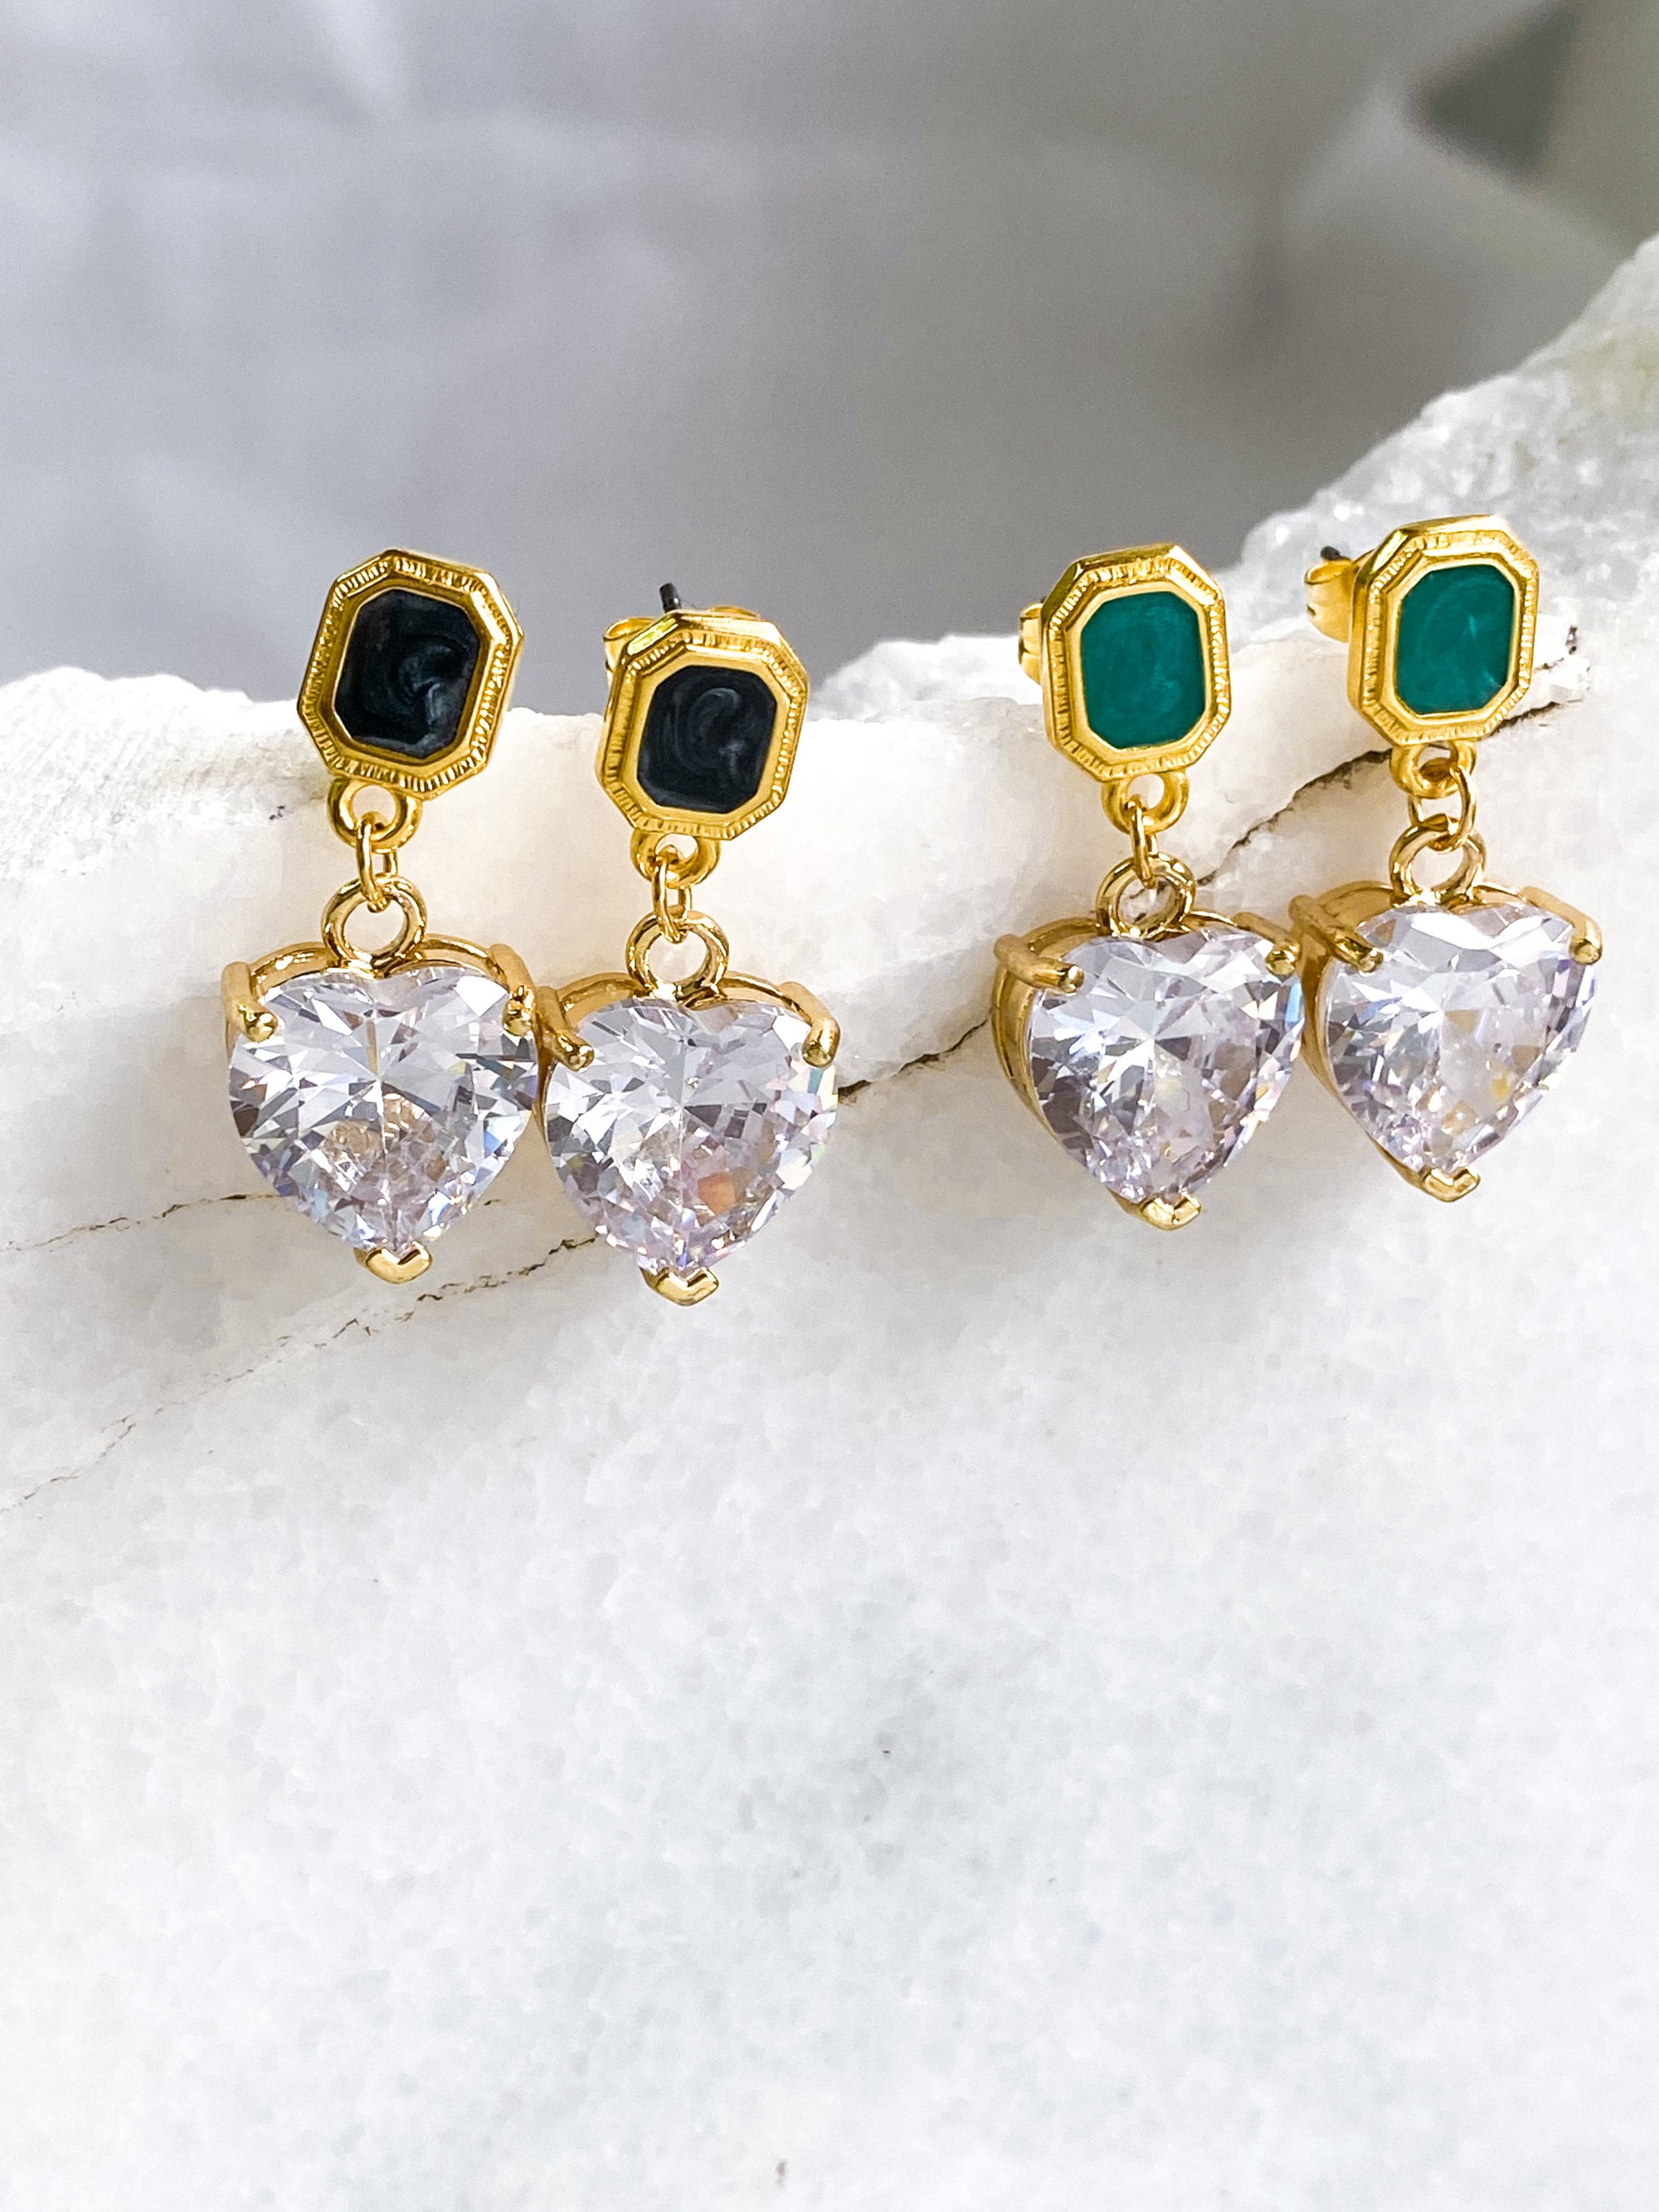 Crystal Heart Earrings Retro Style Heart Earrings Dangle Earrings Vintage Style Saint Valentine Gift for Her Zircon Heart Earrings